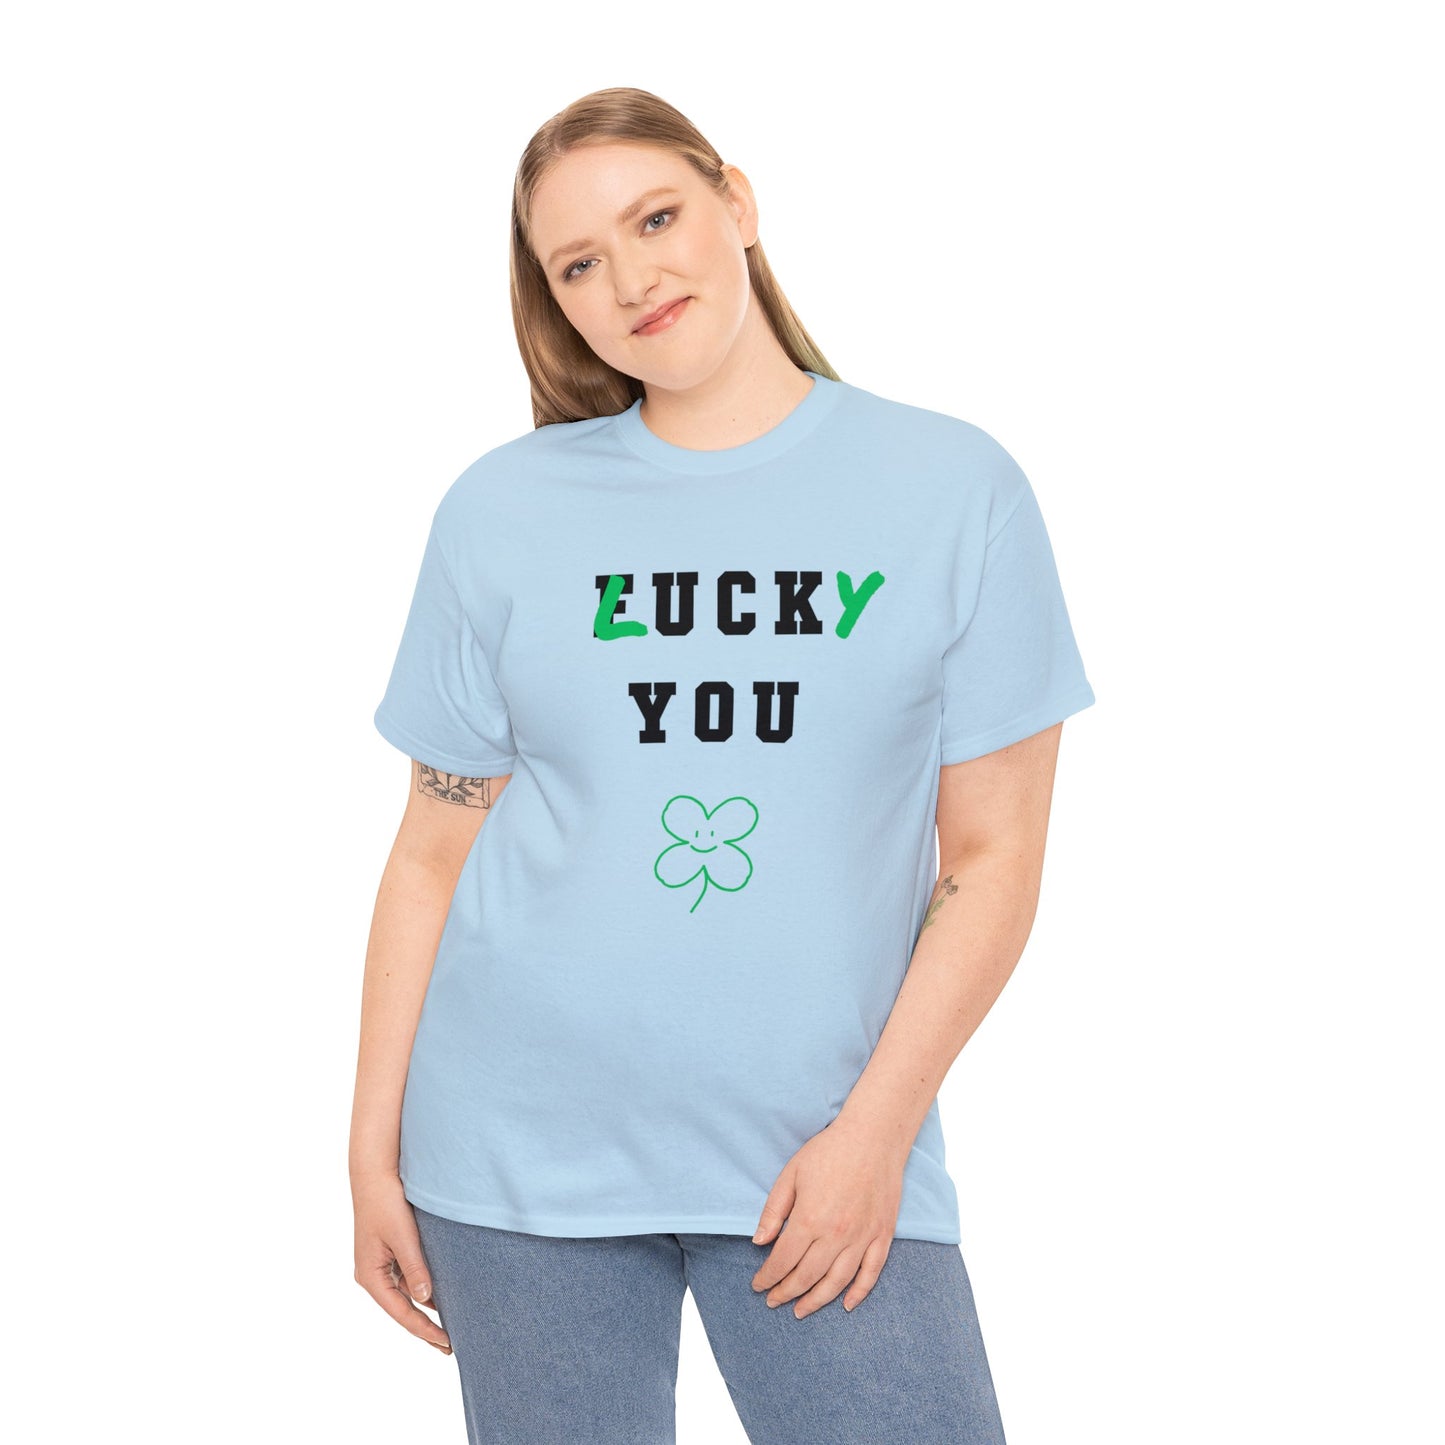 "lucky you" - Tee